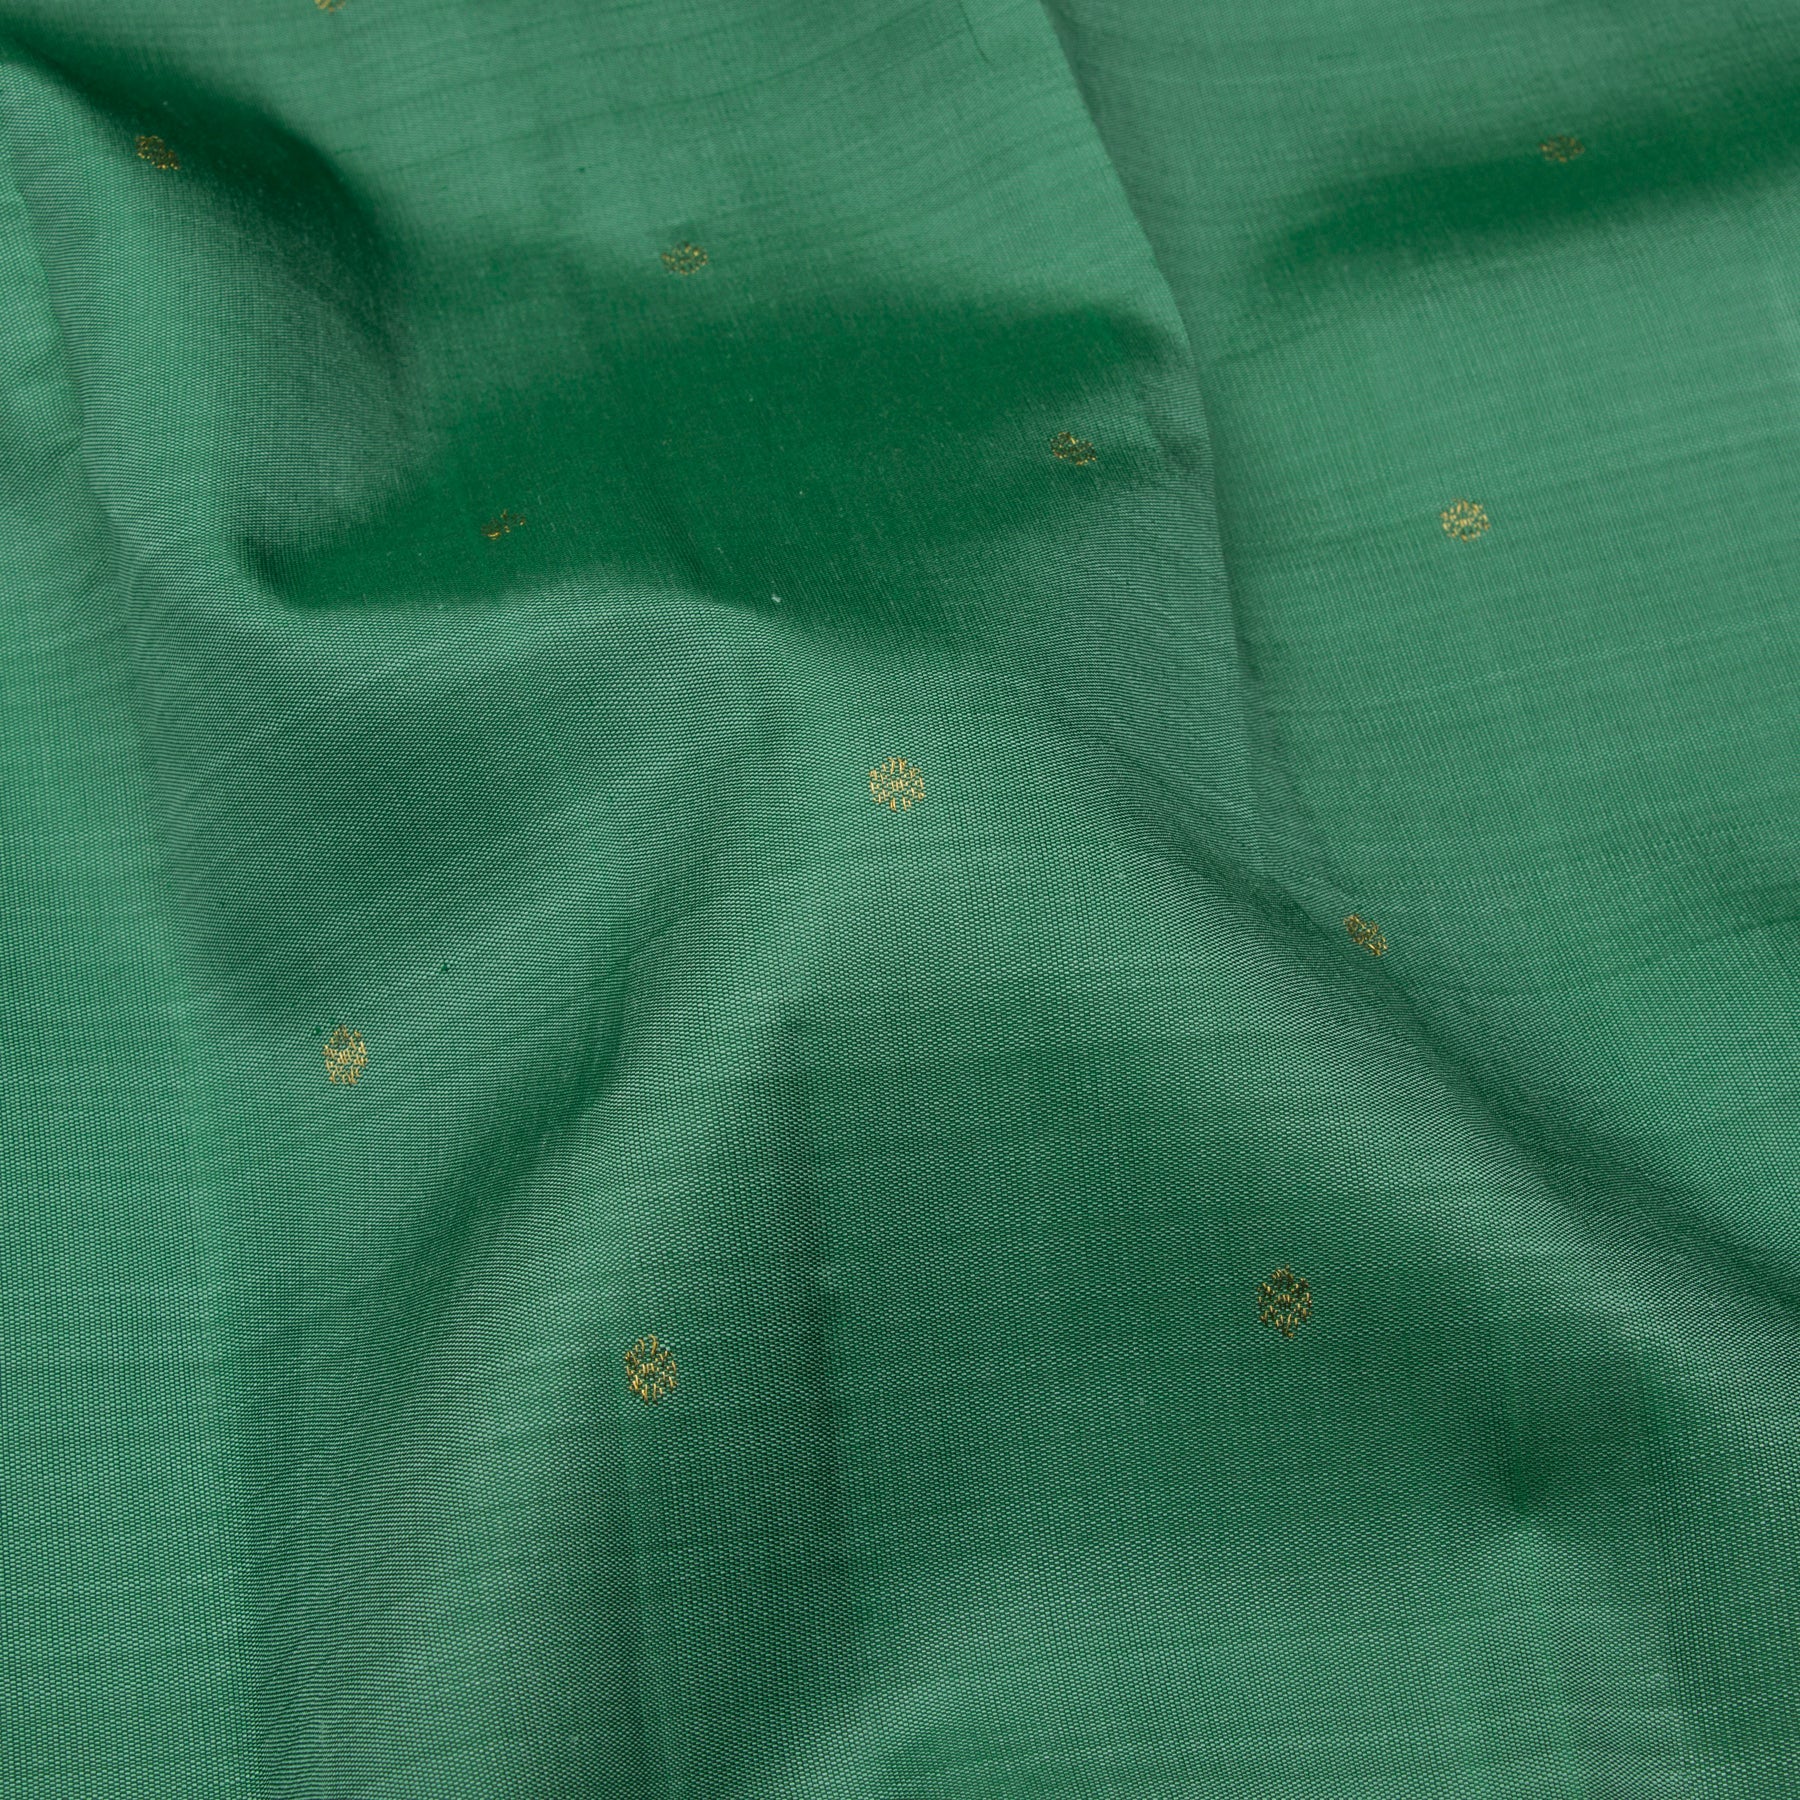 Kanakavalli Kanjivaram Silk Sari 23-611-HS001-11741 - Fabric View